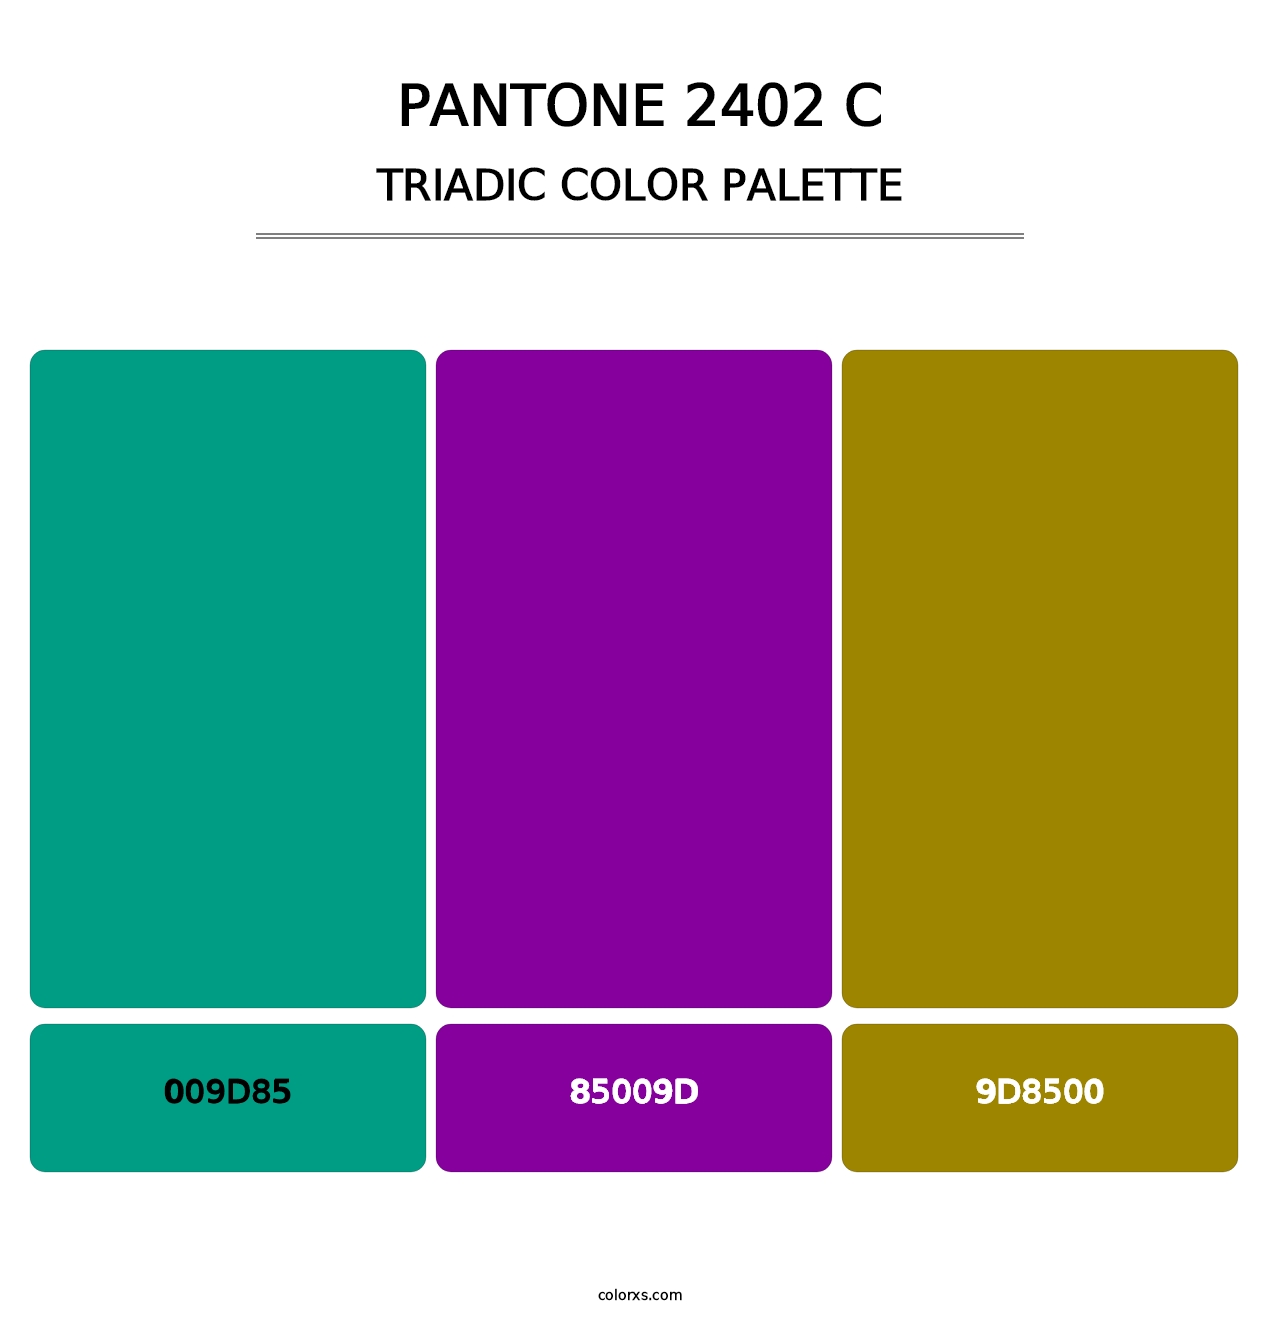 PANTONE 2402 C - Triadic Color Palette